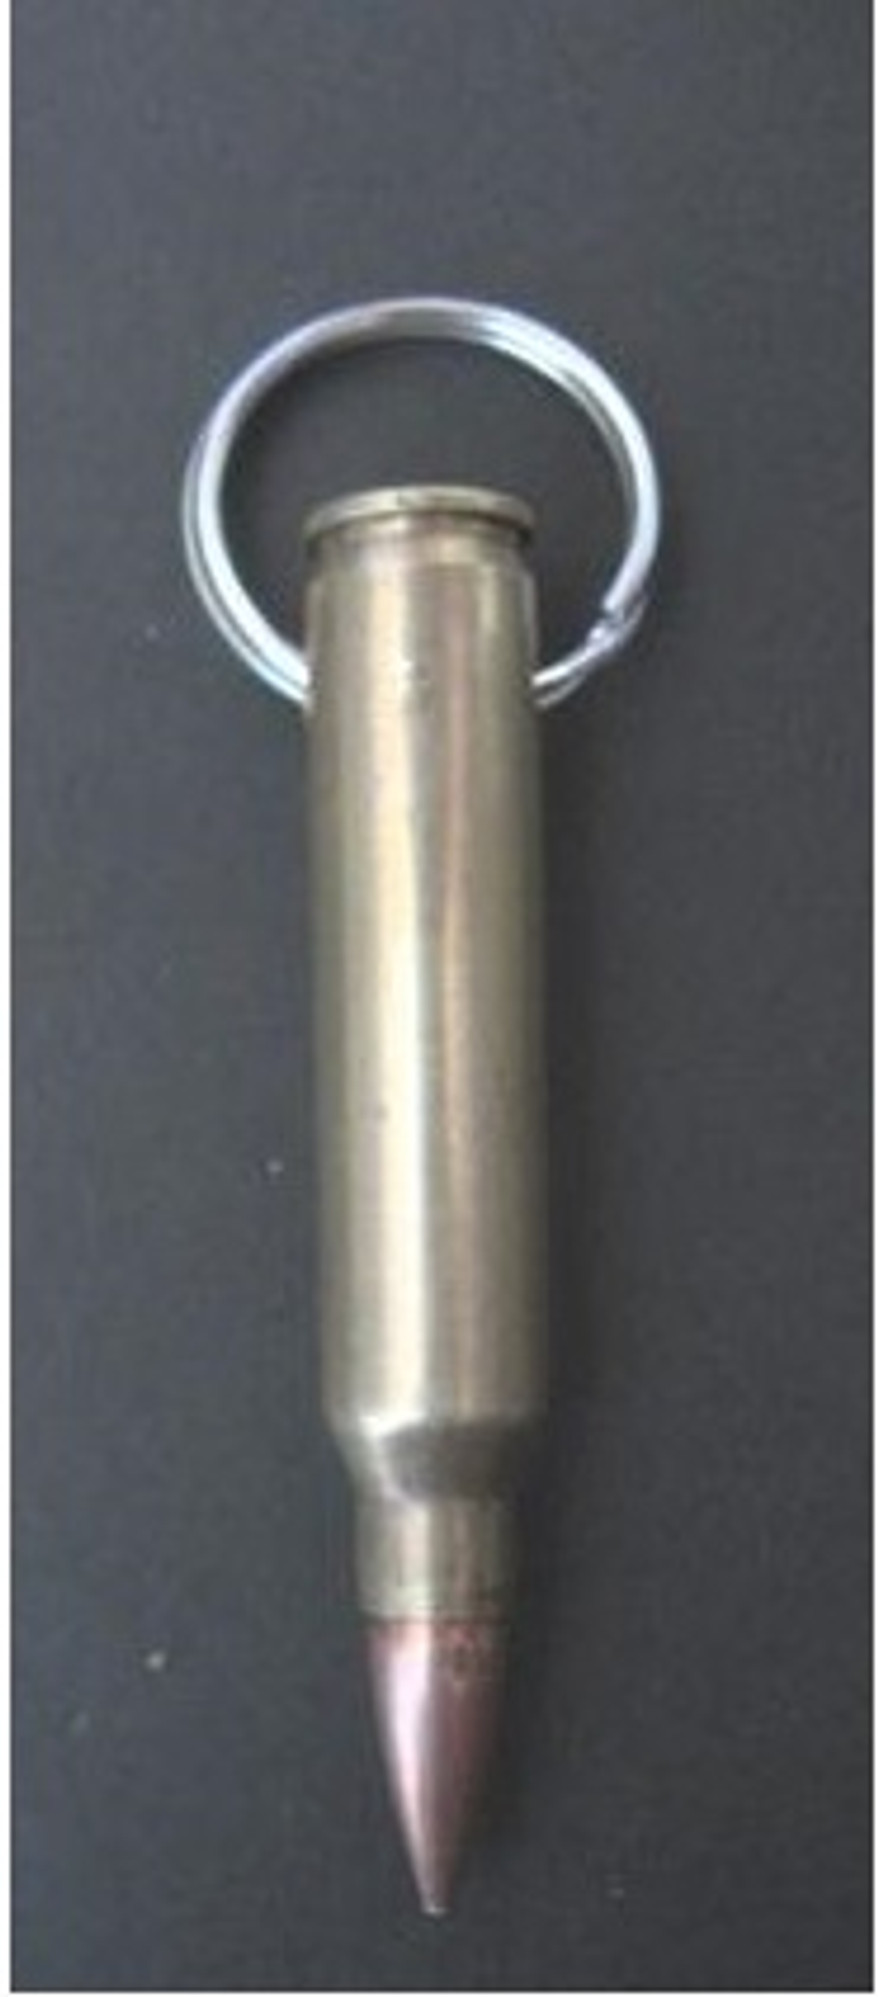 Brass Bullet Key Chain - 0.308